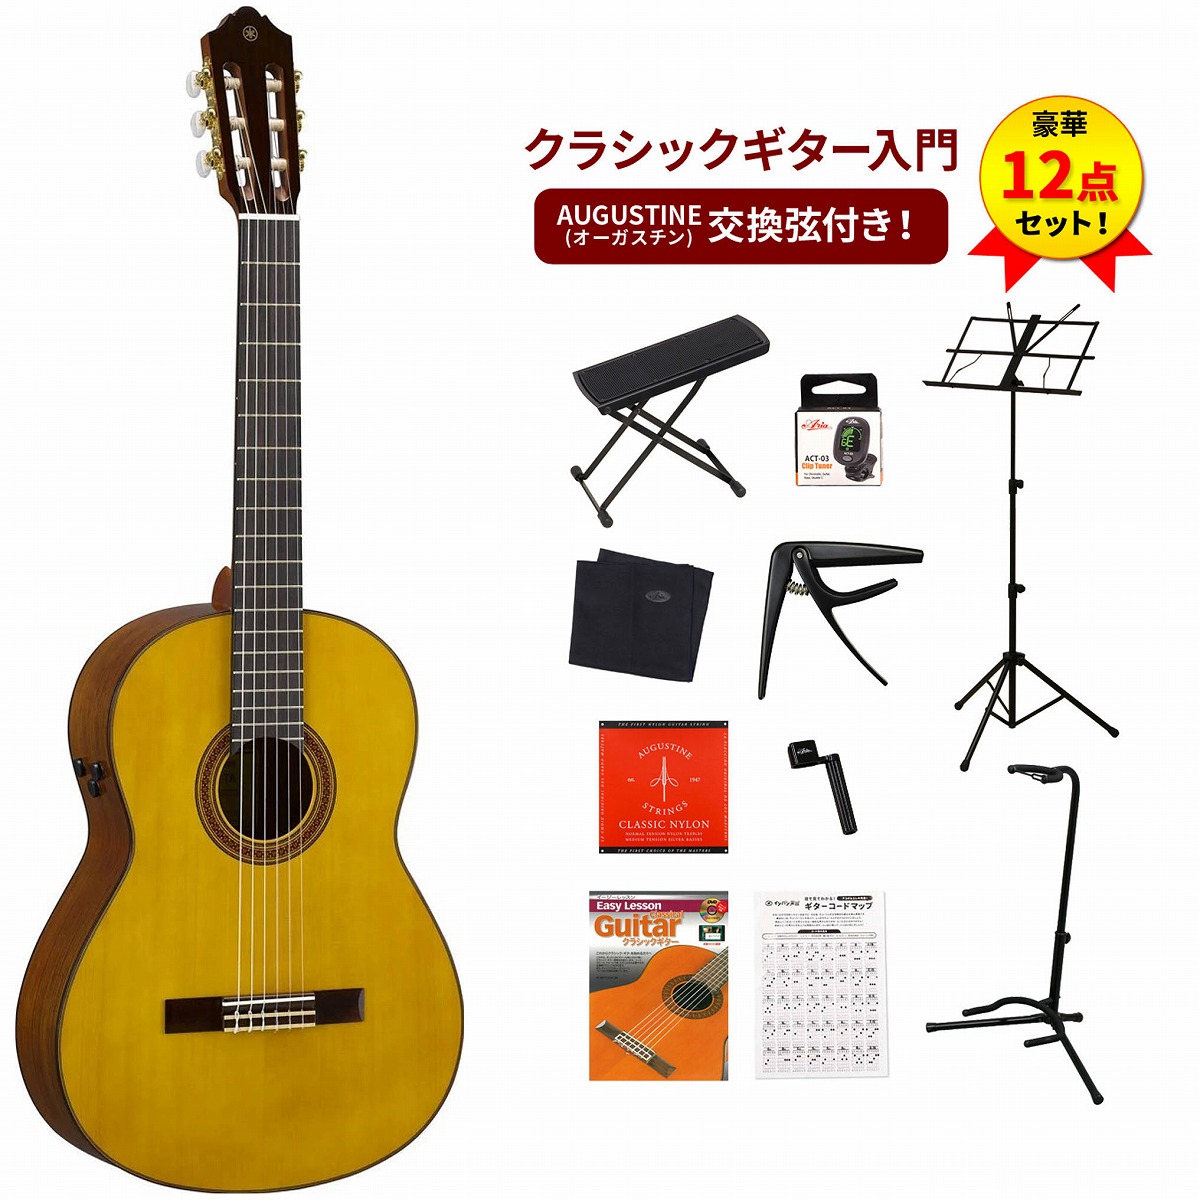 YAMAHA / CG-TA NT(ナチュラル) 【TransAcoustic】 ヤマハ クラシックギター エレガット ナイロンストリングス  クラシックギター入門豪華12点セット